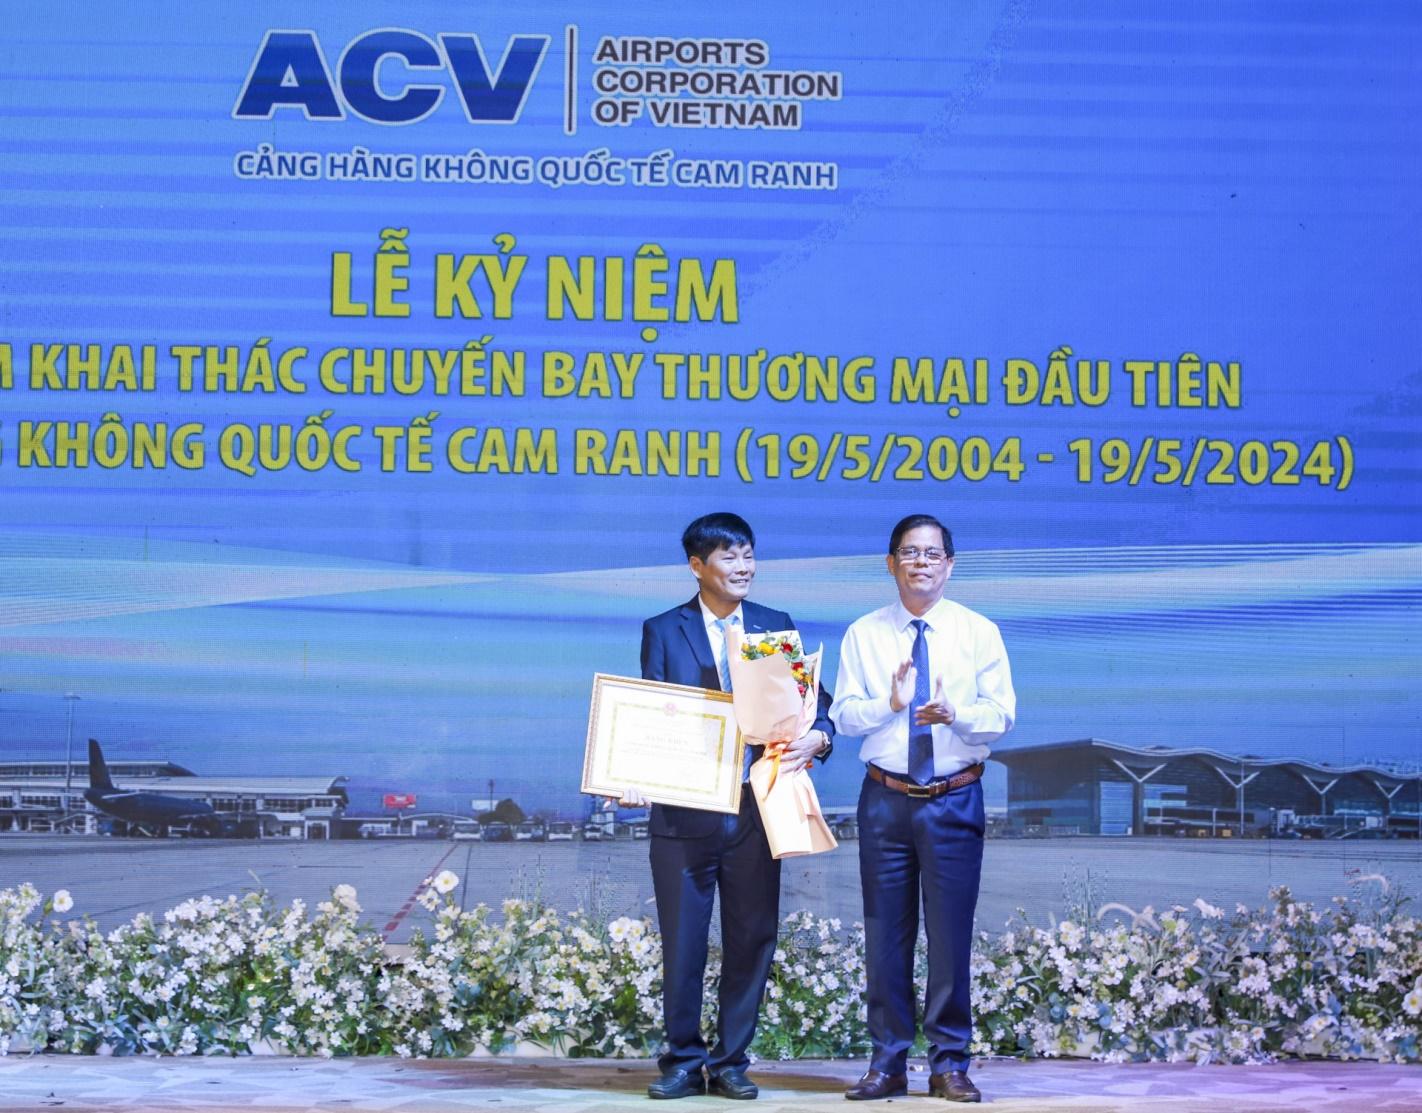 Đồng chí Nguyễn Tấn Tuân trao bằng khen cho Cảng Hàng không quốc tế Cam Ranh.